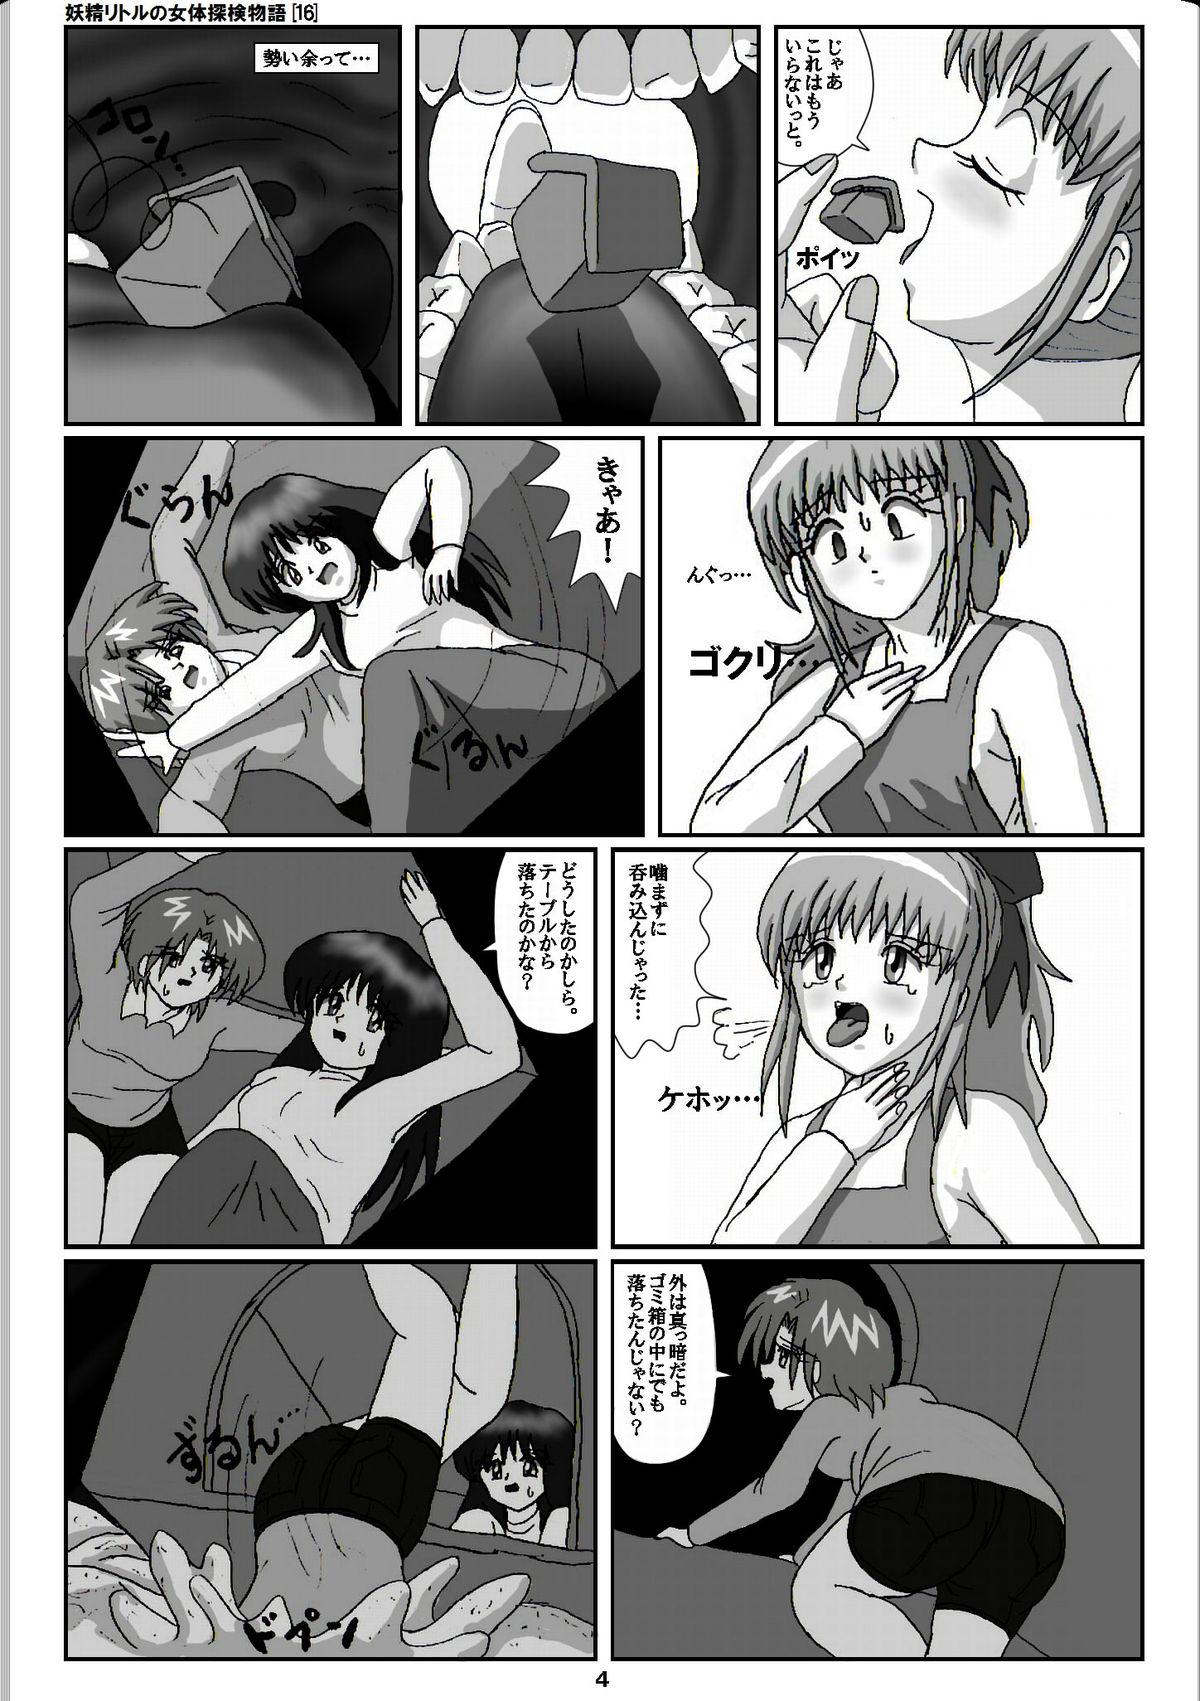 Vagina Yousei Little no Nyotai Tanken Monogatari Gets - Page 4